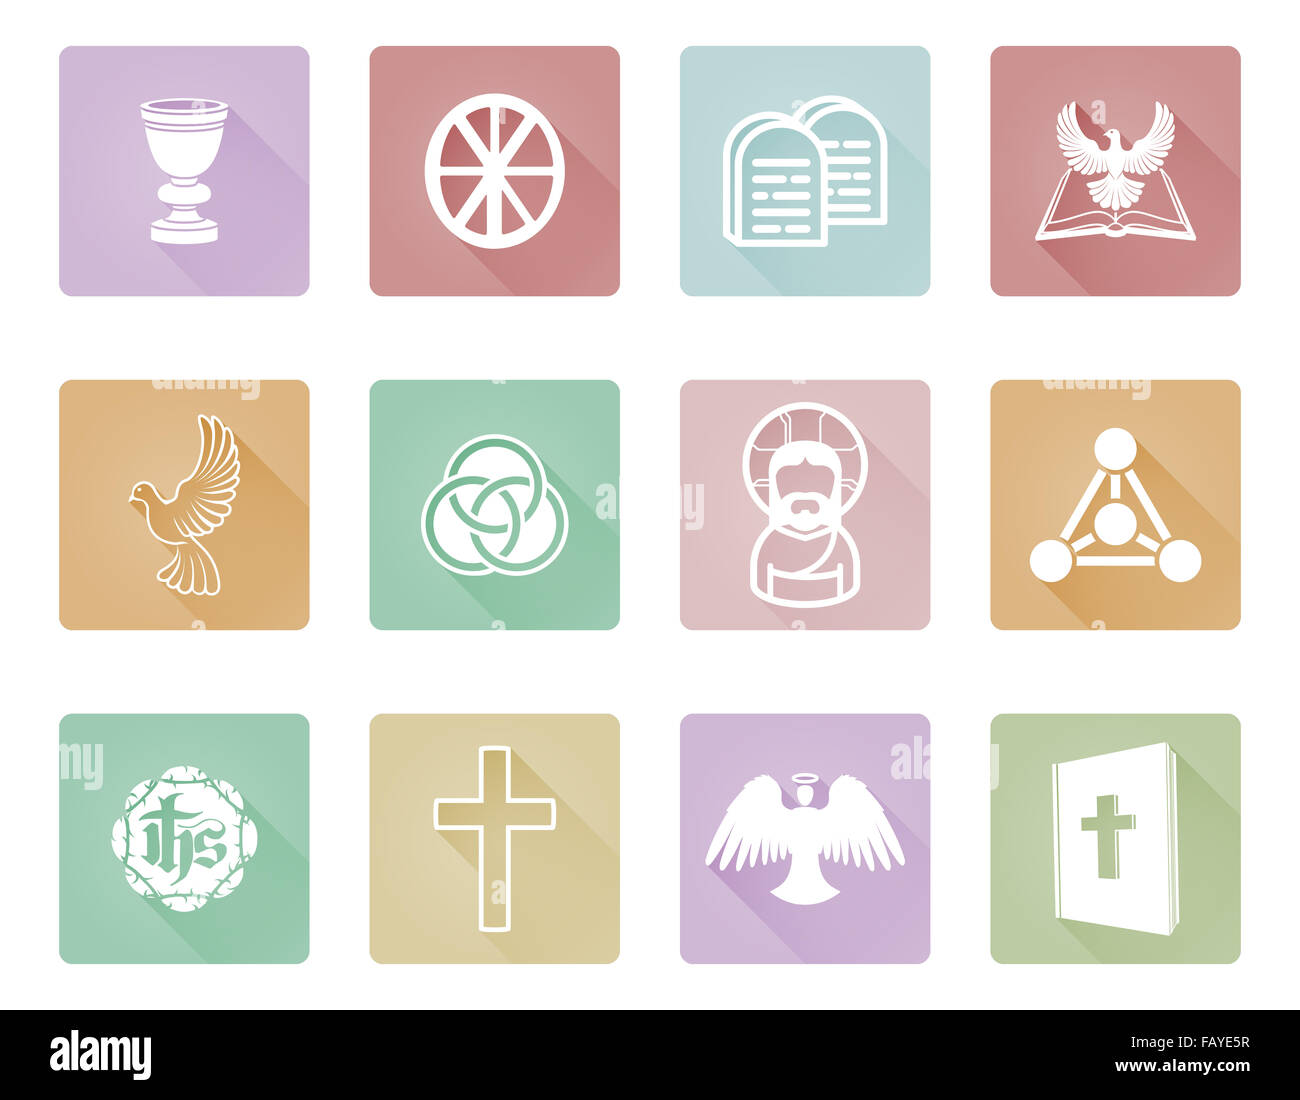 Un ensemble d'icônes et symboles religieux chrétiens y compris l'Ange, Jésus Christ, croix, et colombe blanche Banque D'Images